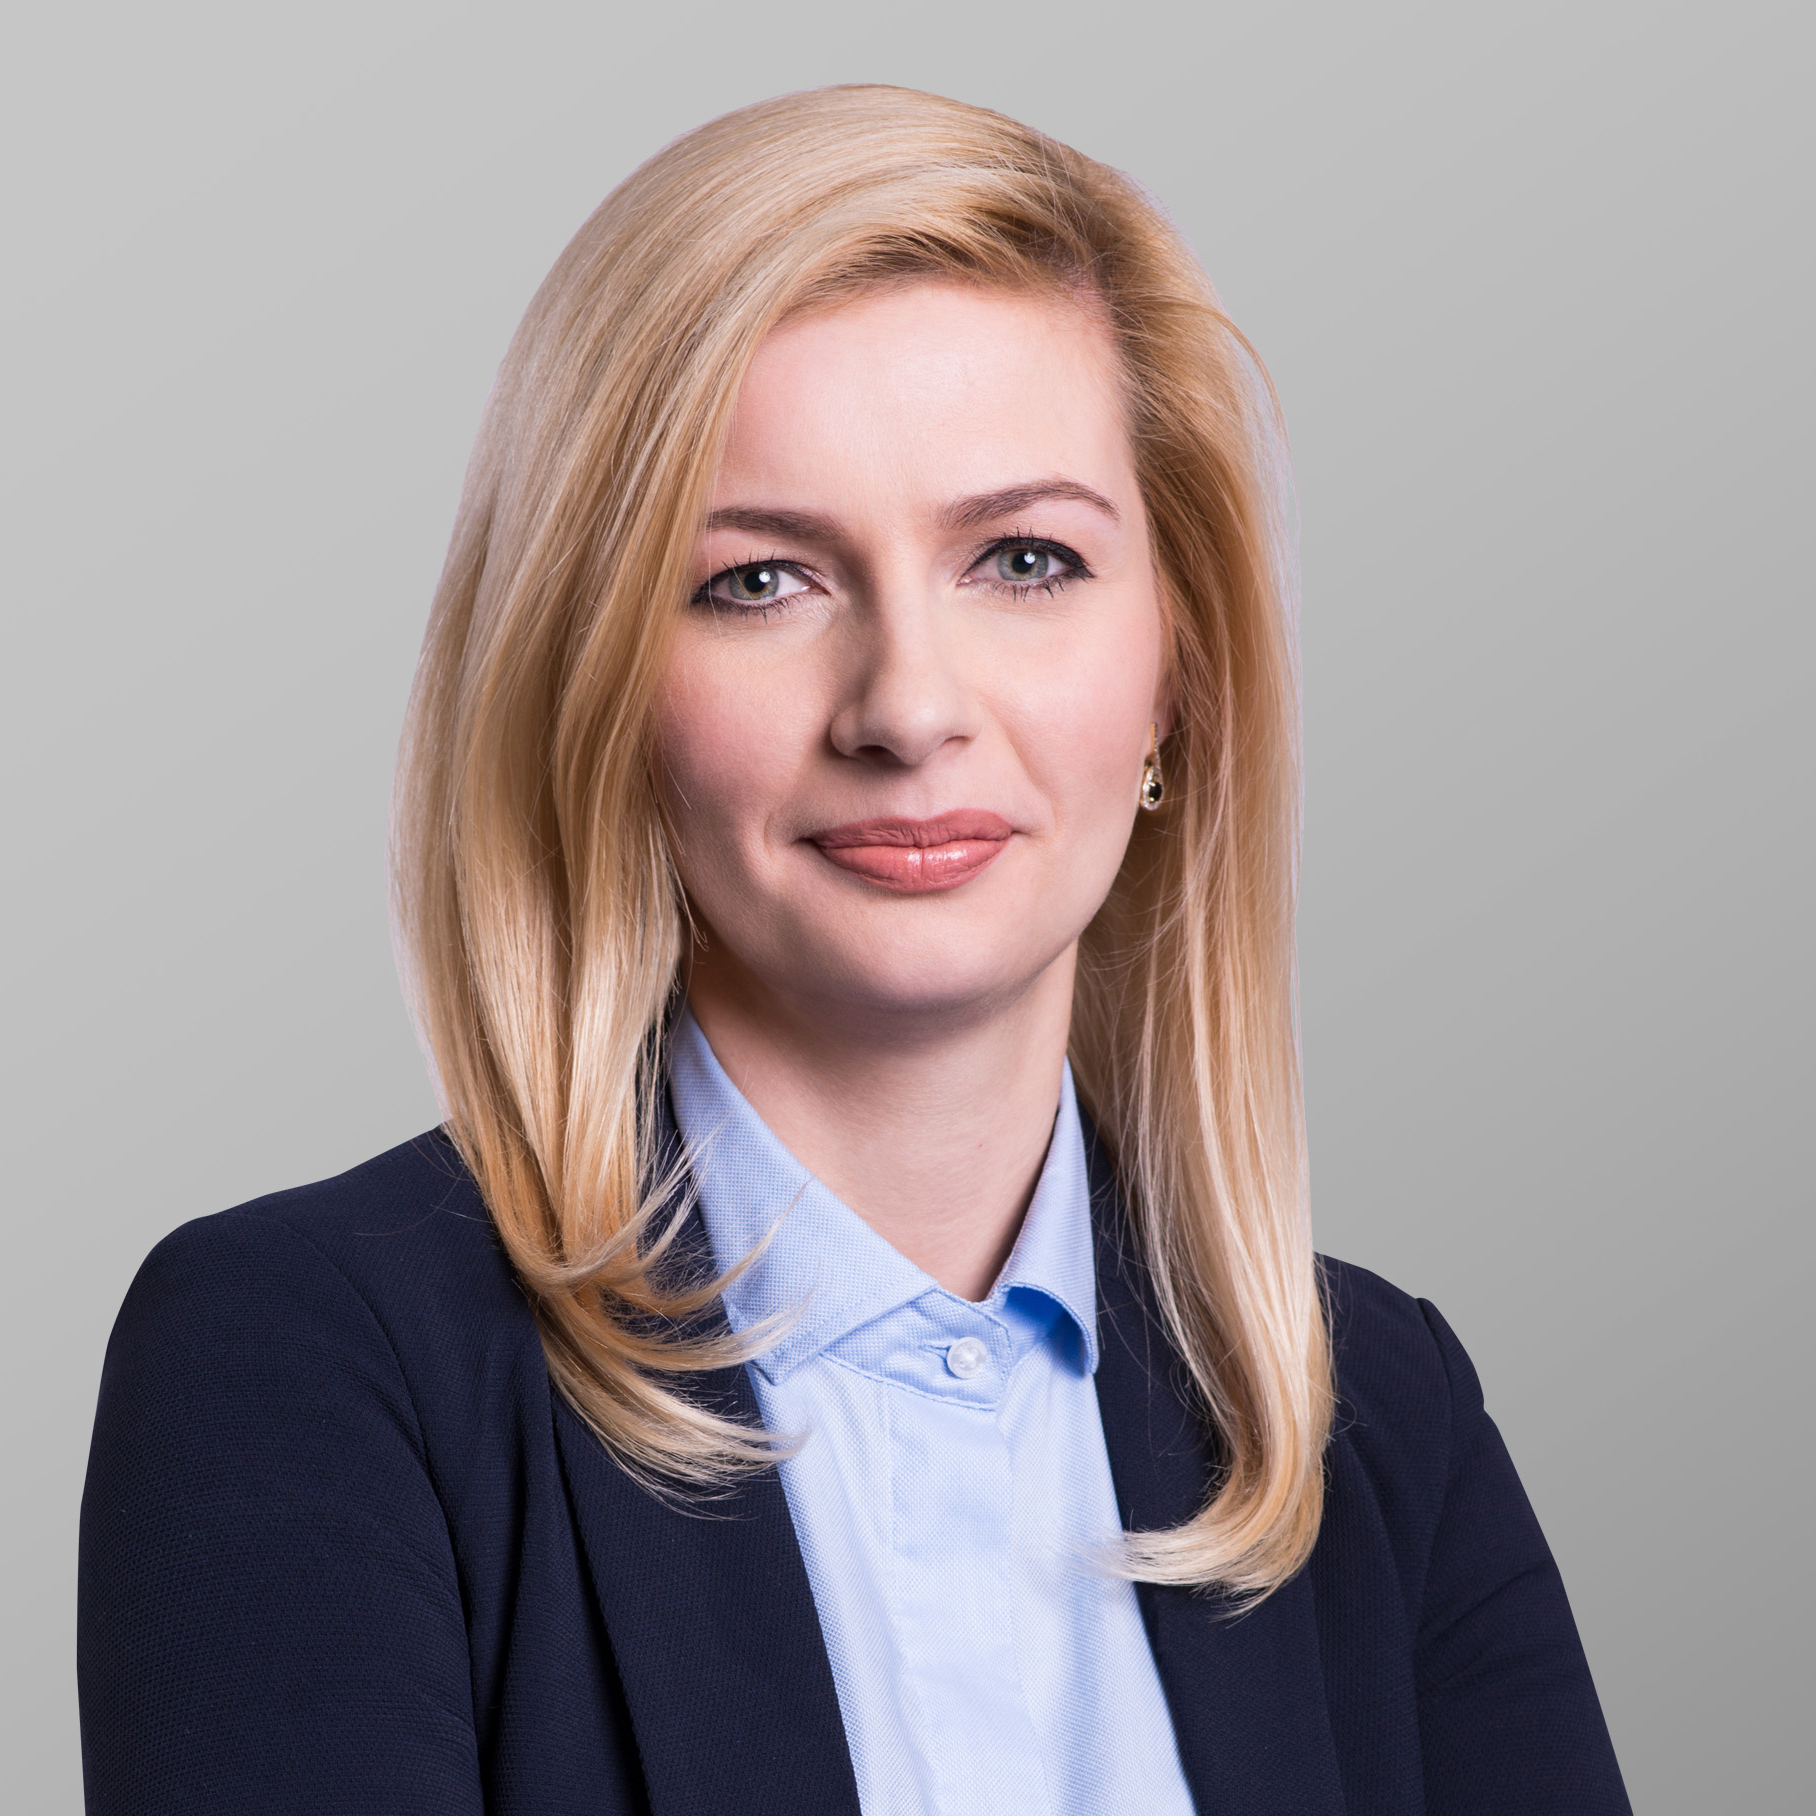 Aleksandra Tyszkiewicz - Executive Director - Enterprise Solutions, Hays Poland